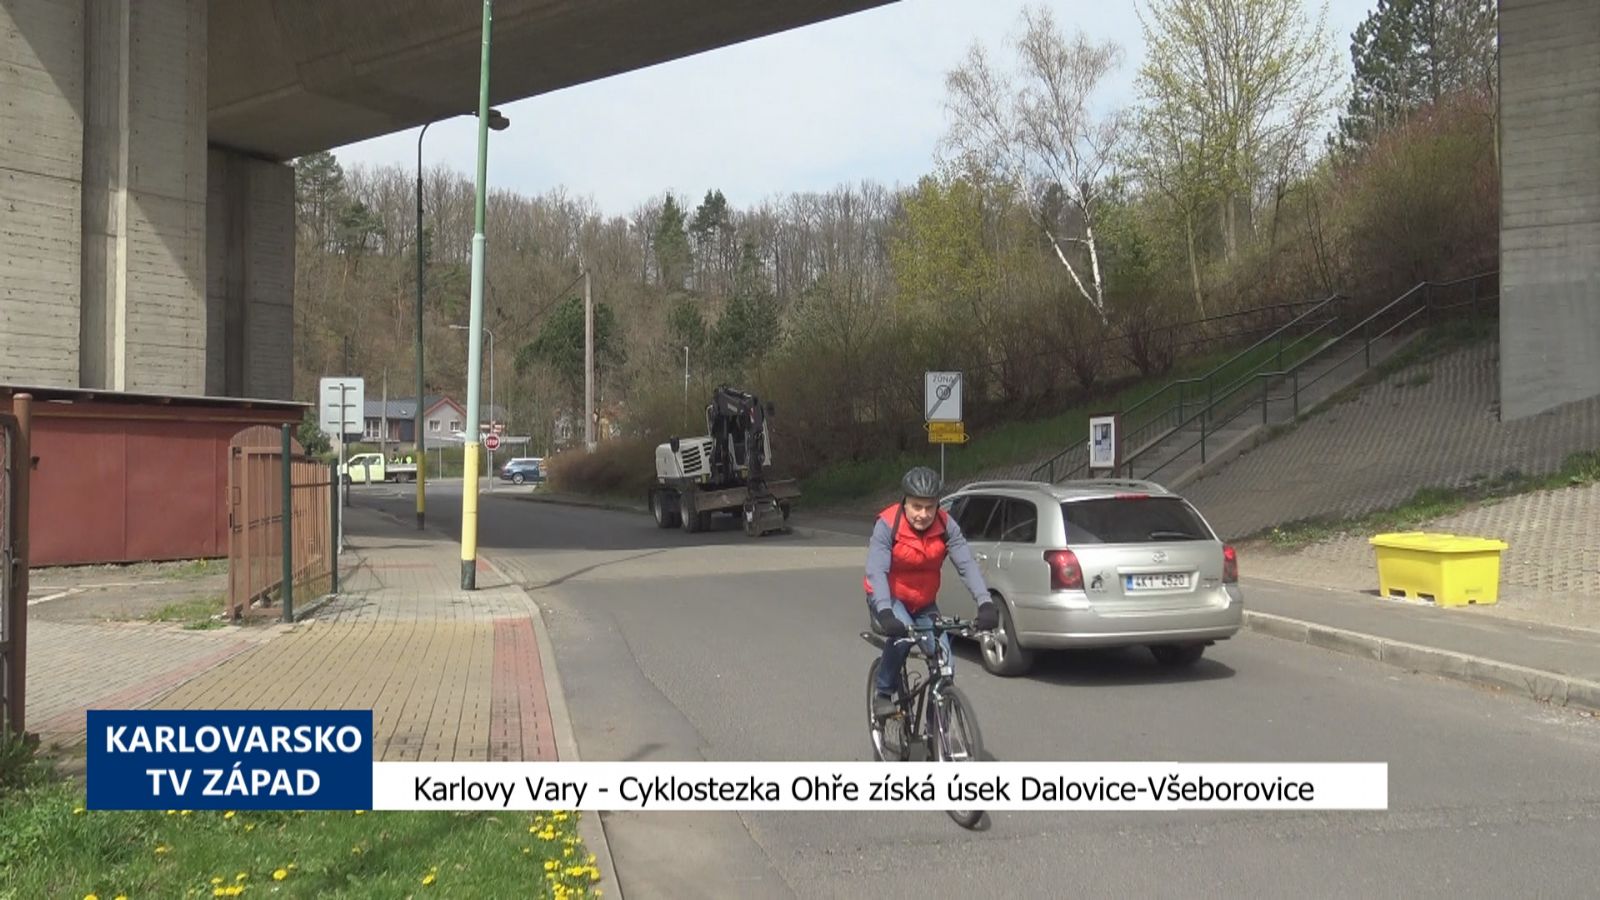 Karlovy Vary: Cyklostezka Ohře získá úsek Dalovice-Všeborovice (TV Západ)